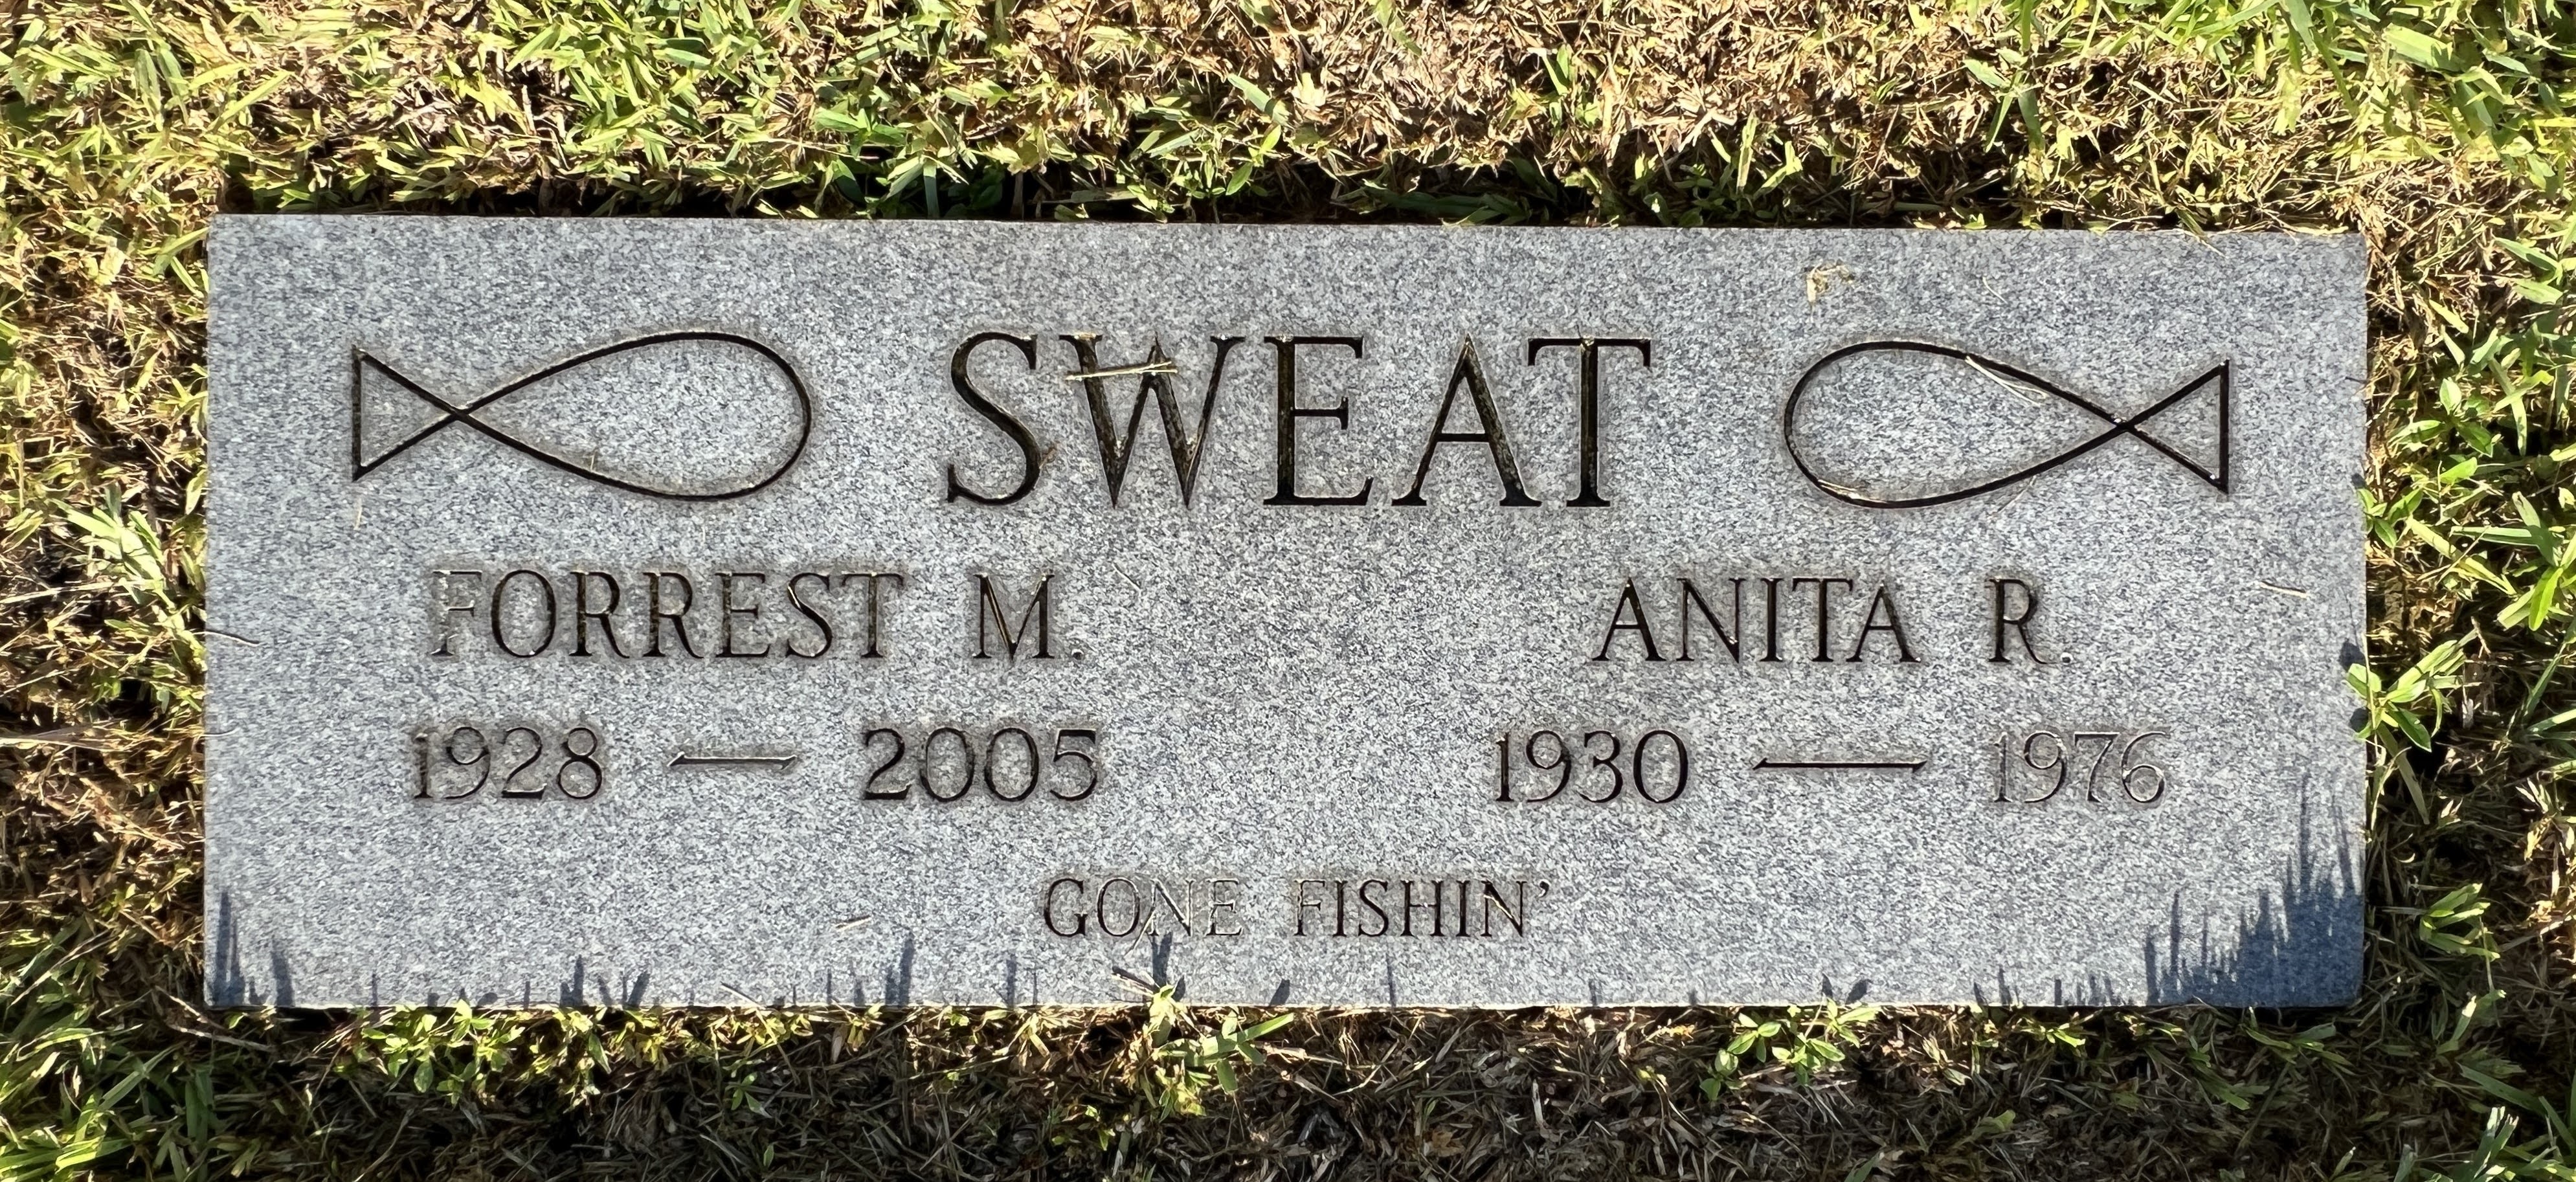 Anita R Sweat